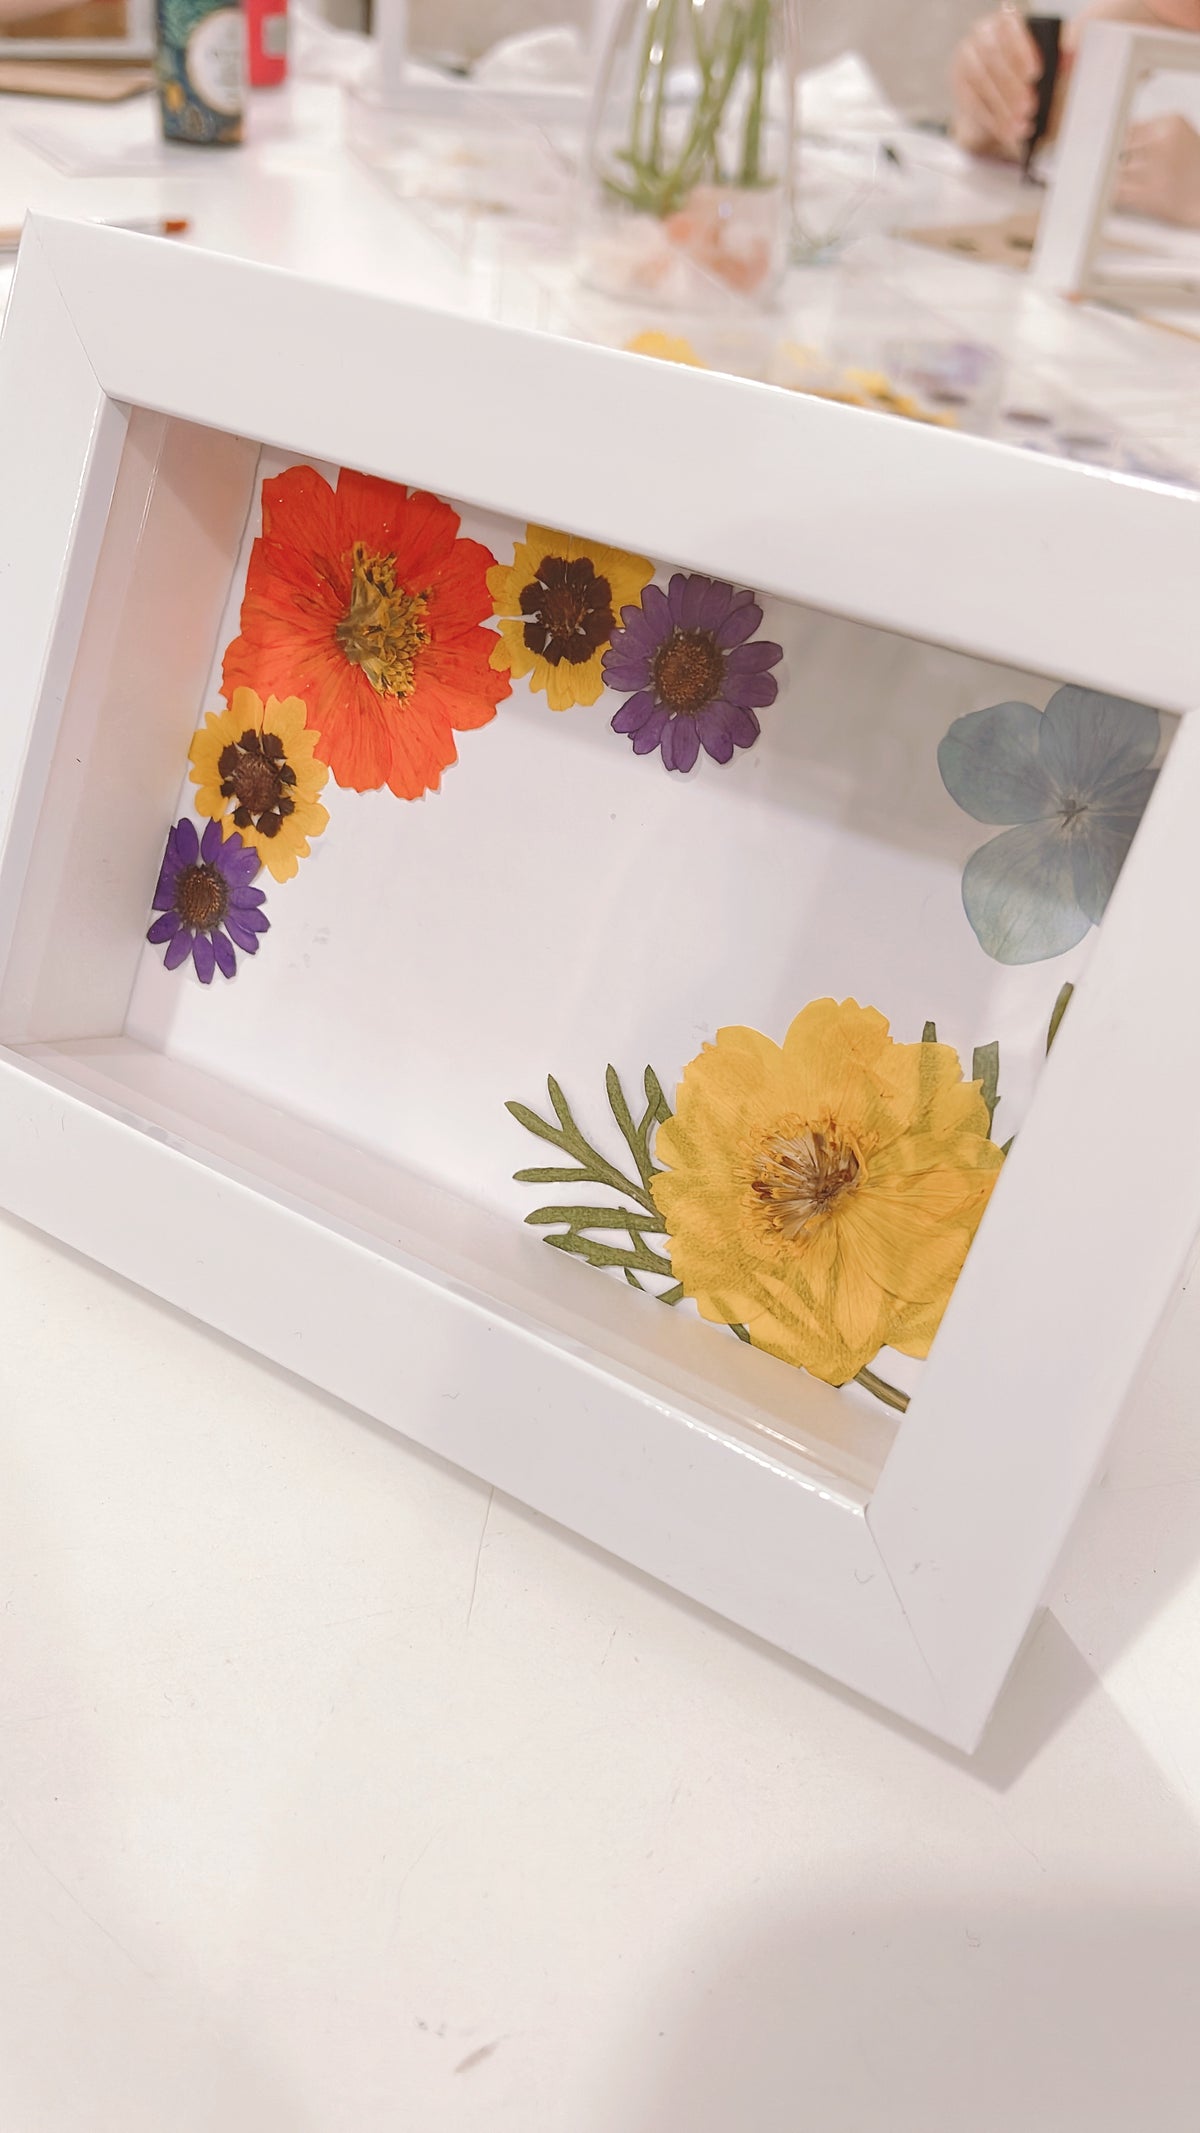 Workshop - Pressed Flower Picture Frame